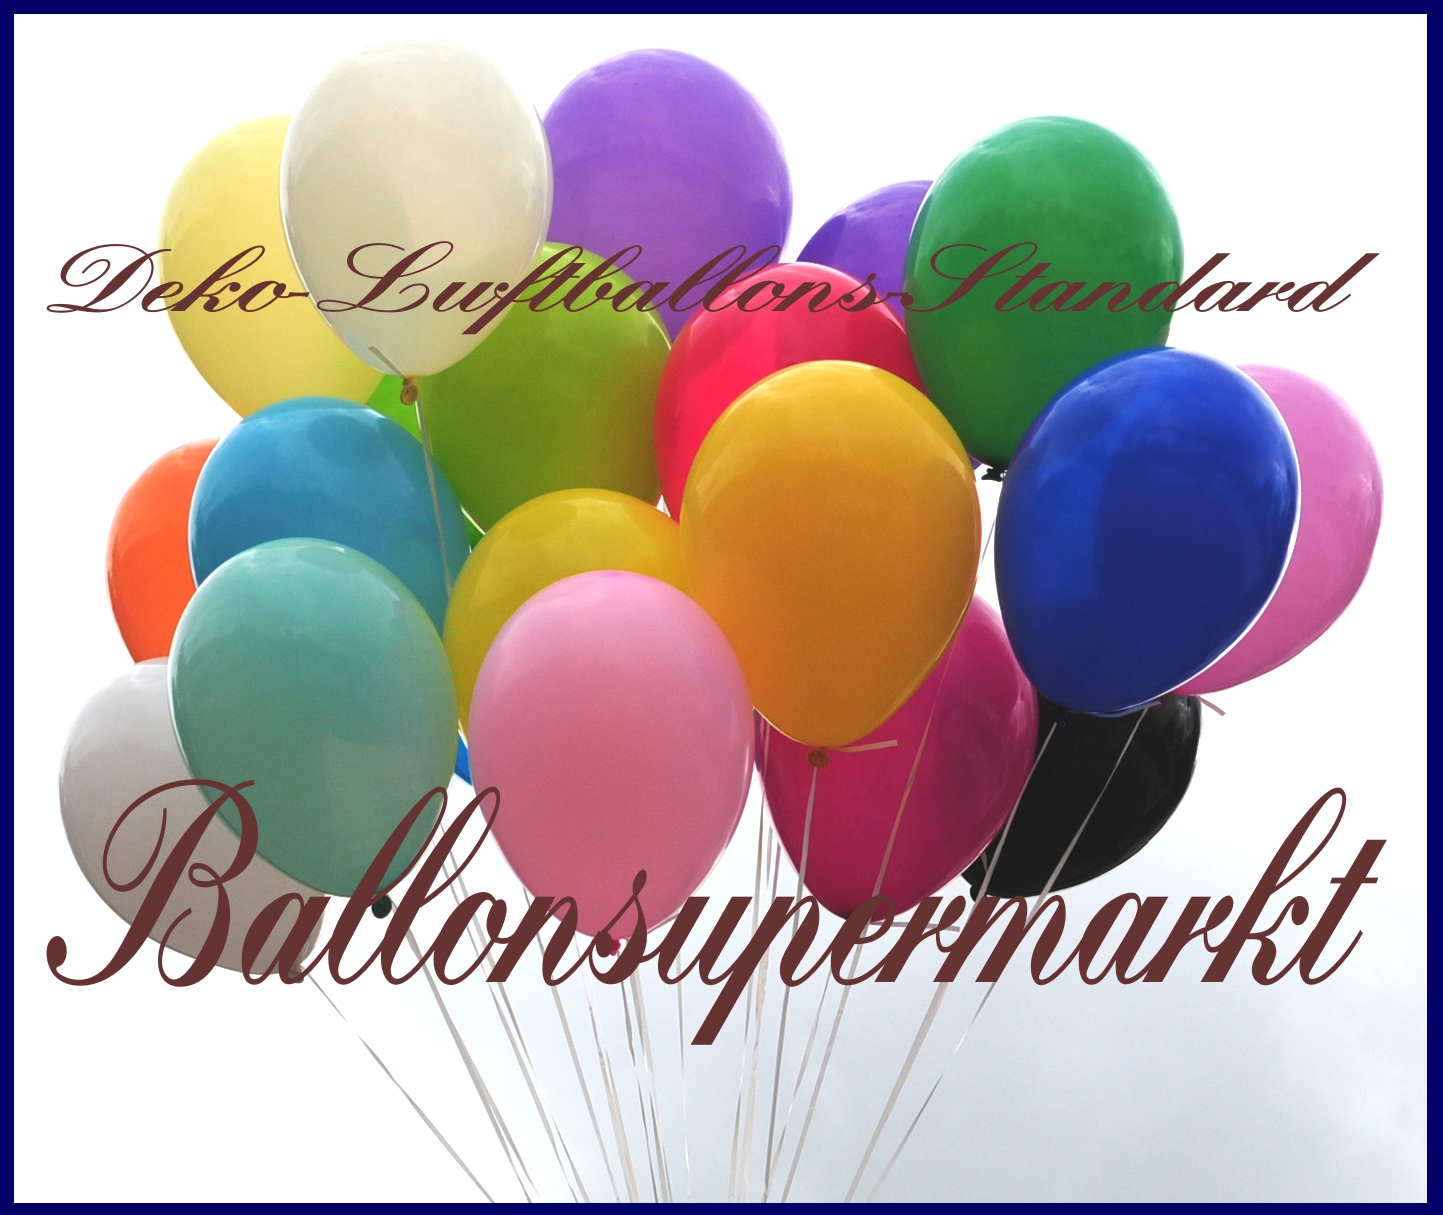 Deko-Luftballons in Standardfarben